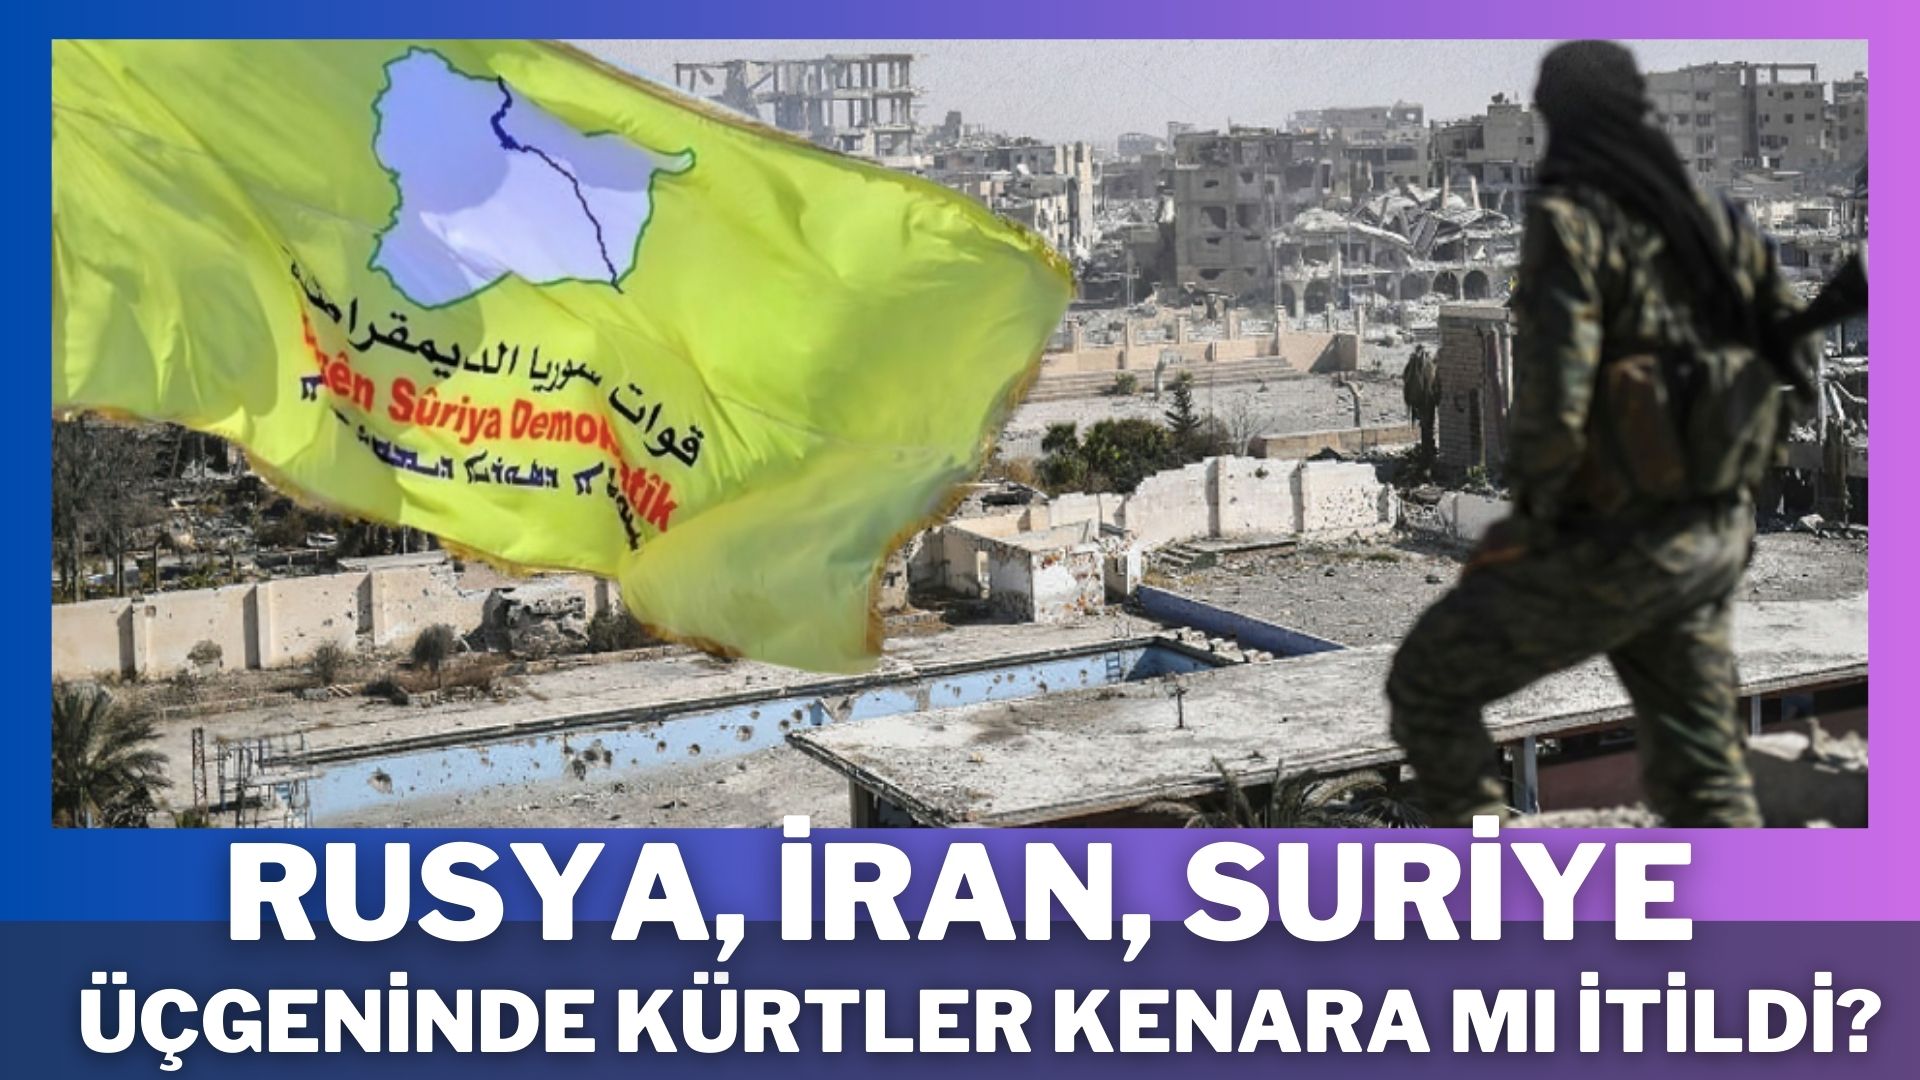 "Suriye'de en büyük bedelleri veren Kürtler, kaybetmeye mi zorlanıyor?"